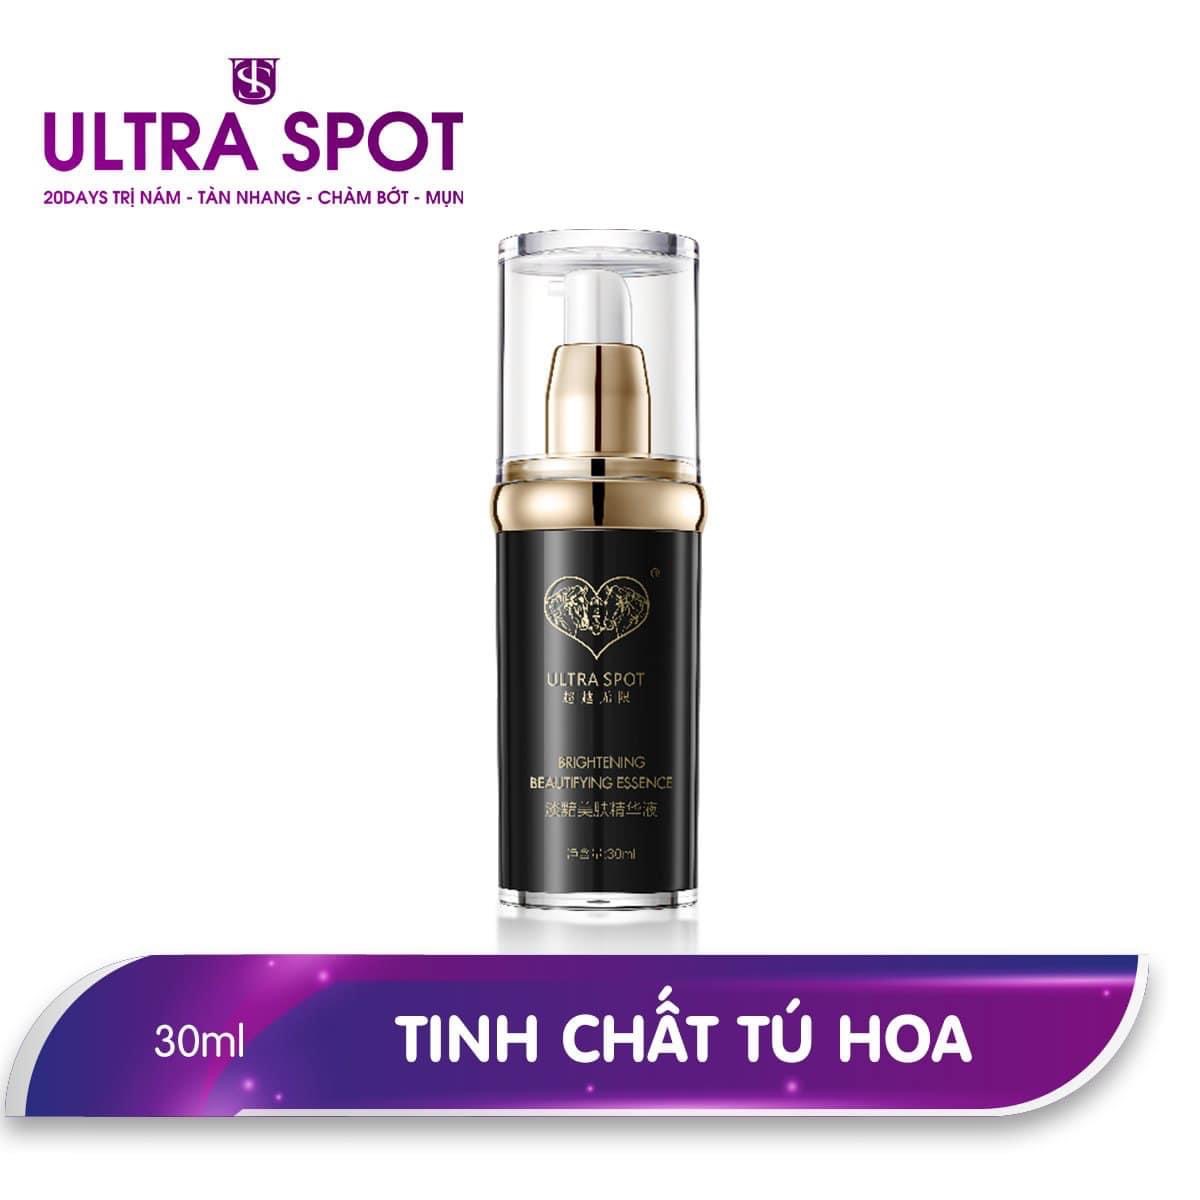 ULTRA SPOT Brightening Beautifying Essence –Tinh chất Tú Hoa có khả năng thẩm thấu sâu ,bạn nhanh chóng cảm nhận được làn da căng bóng, giúp da tươi nhuận, trắng hồng, ngăn chặn được tình trạng lão hoá